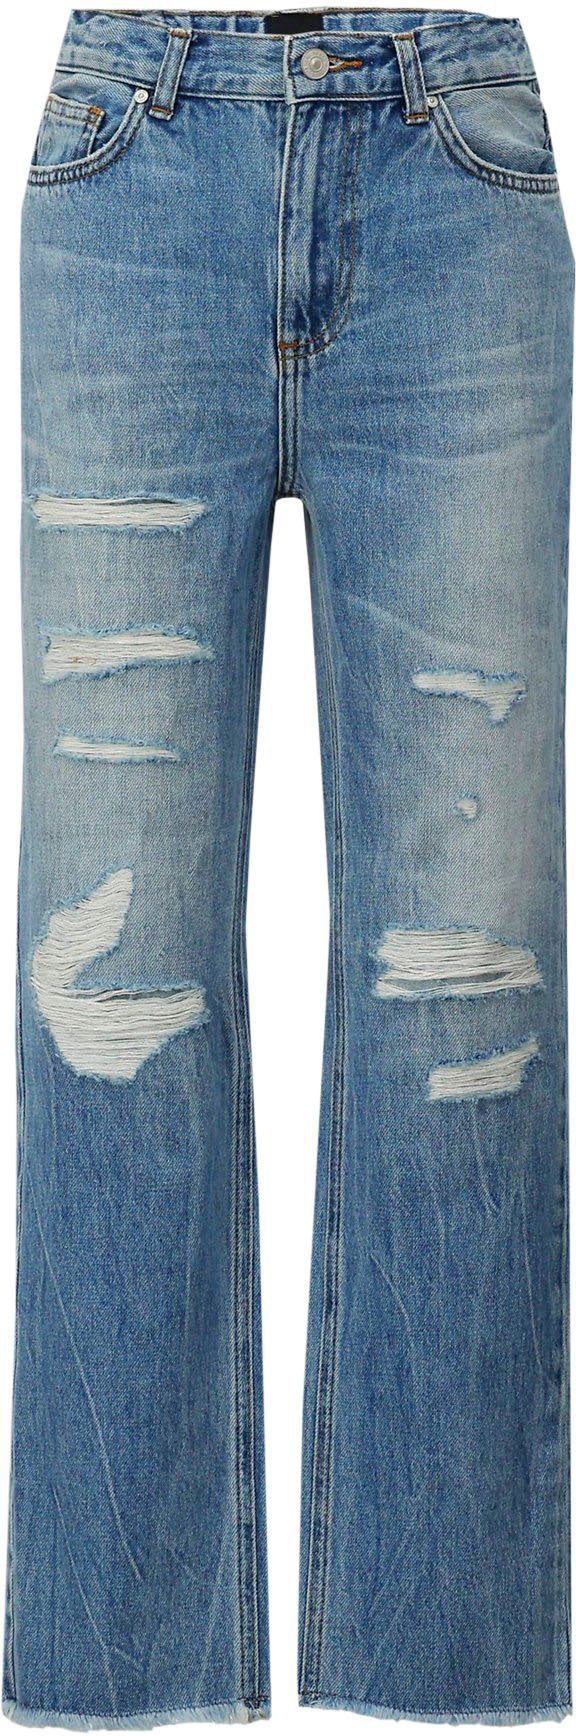 Destroyed-Jeans LTB OLIVA für GIRLS